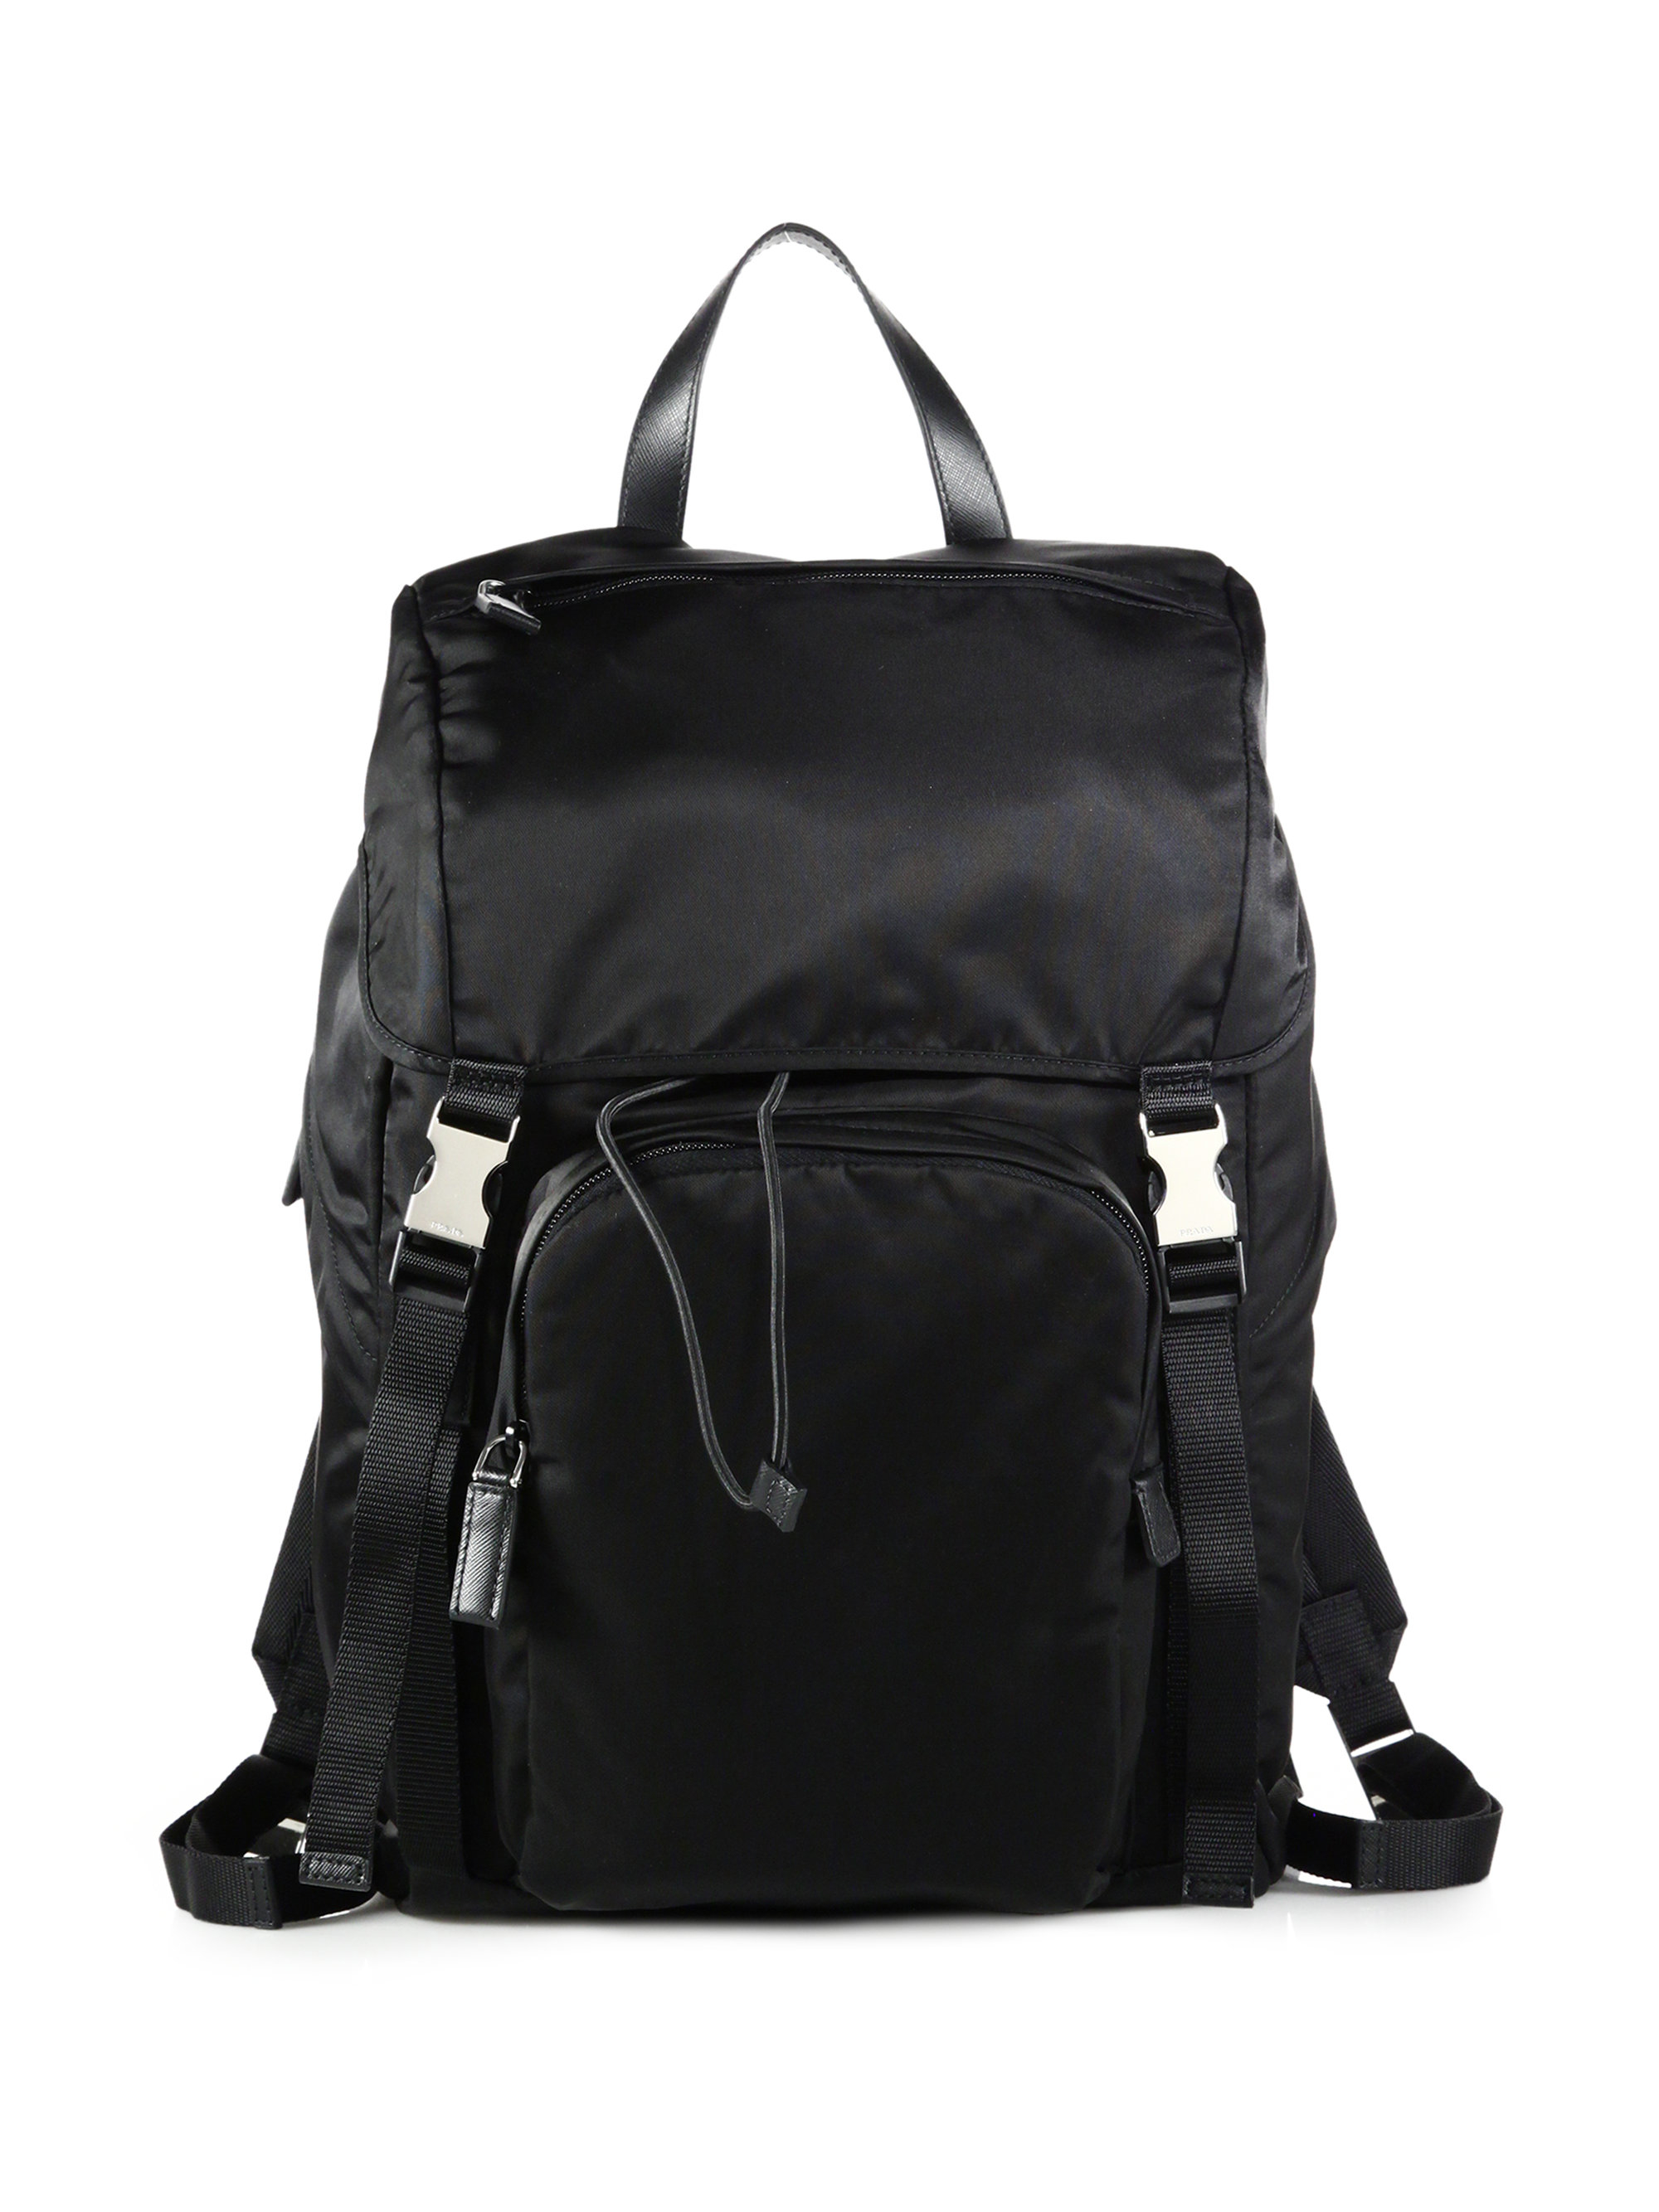 Backpack Nylon Black 89